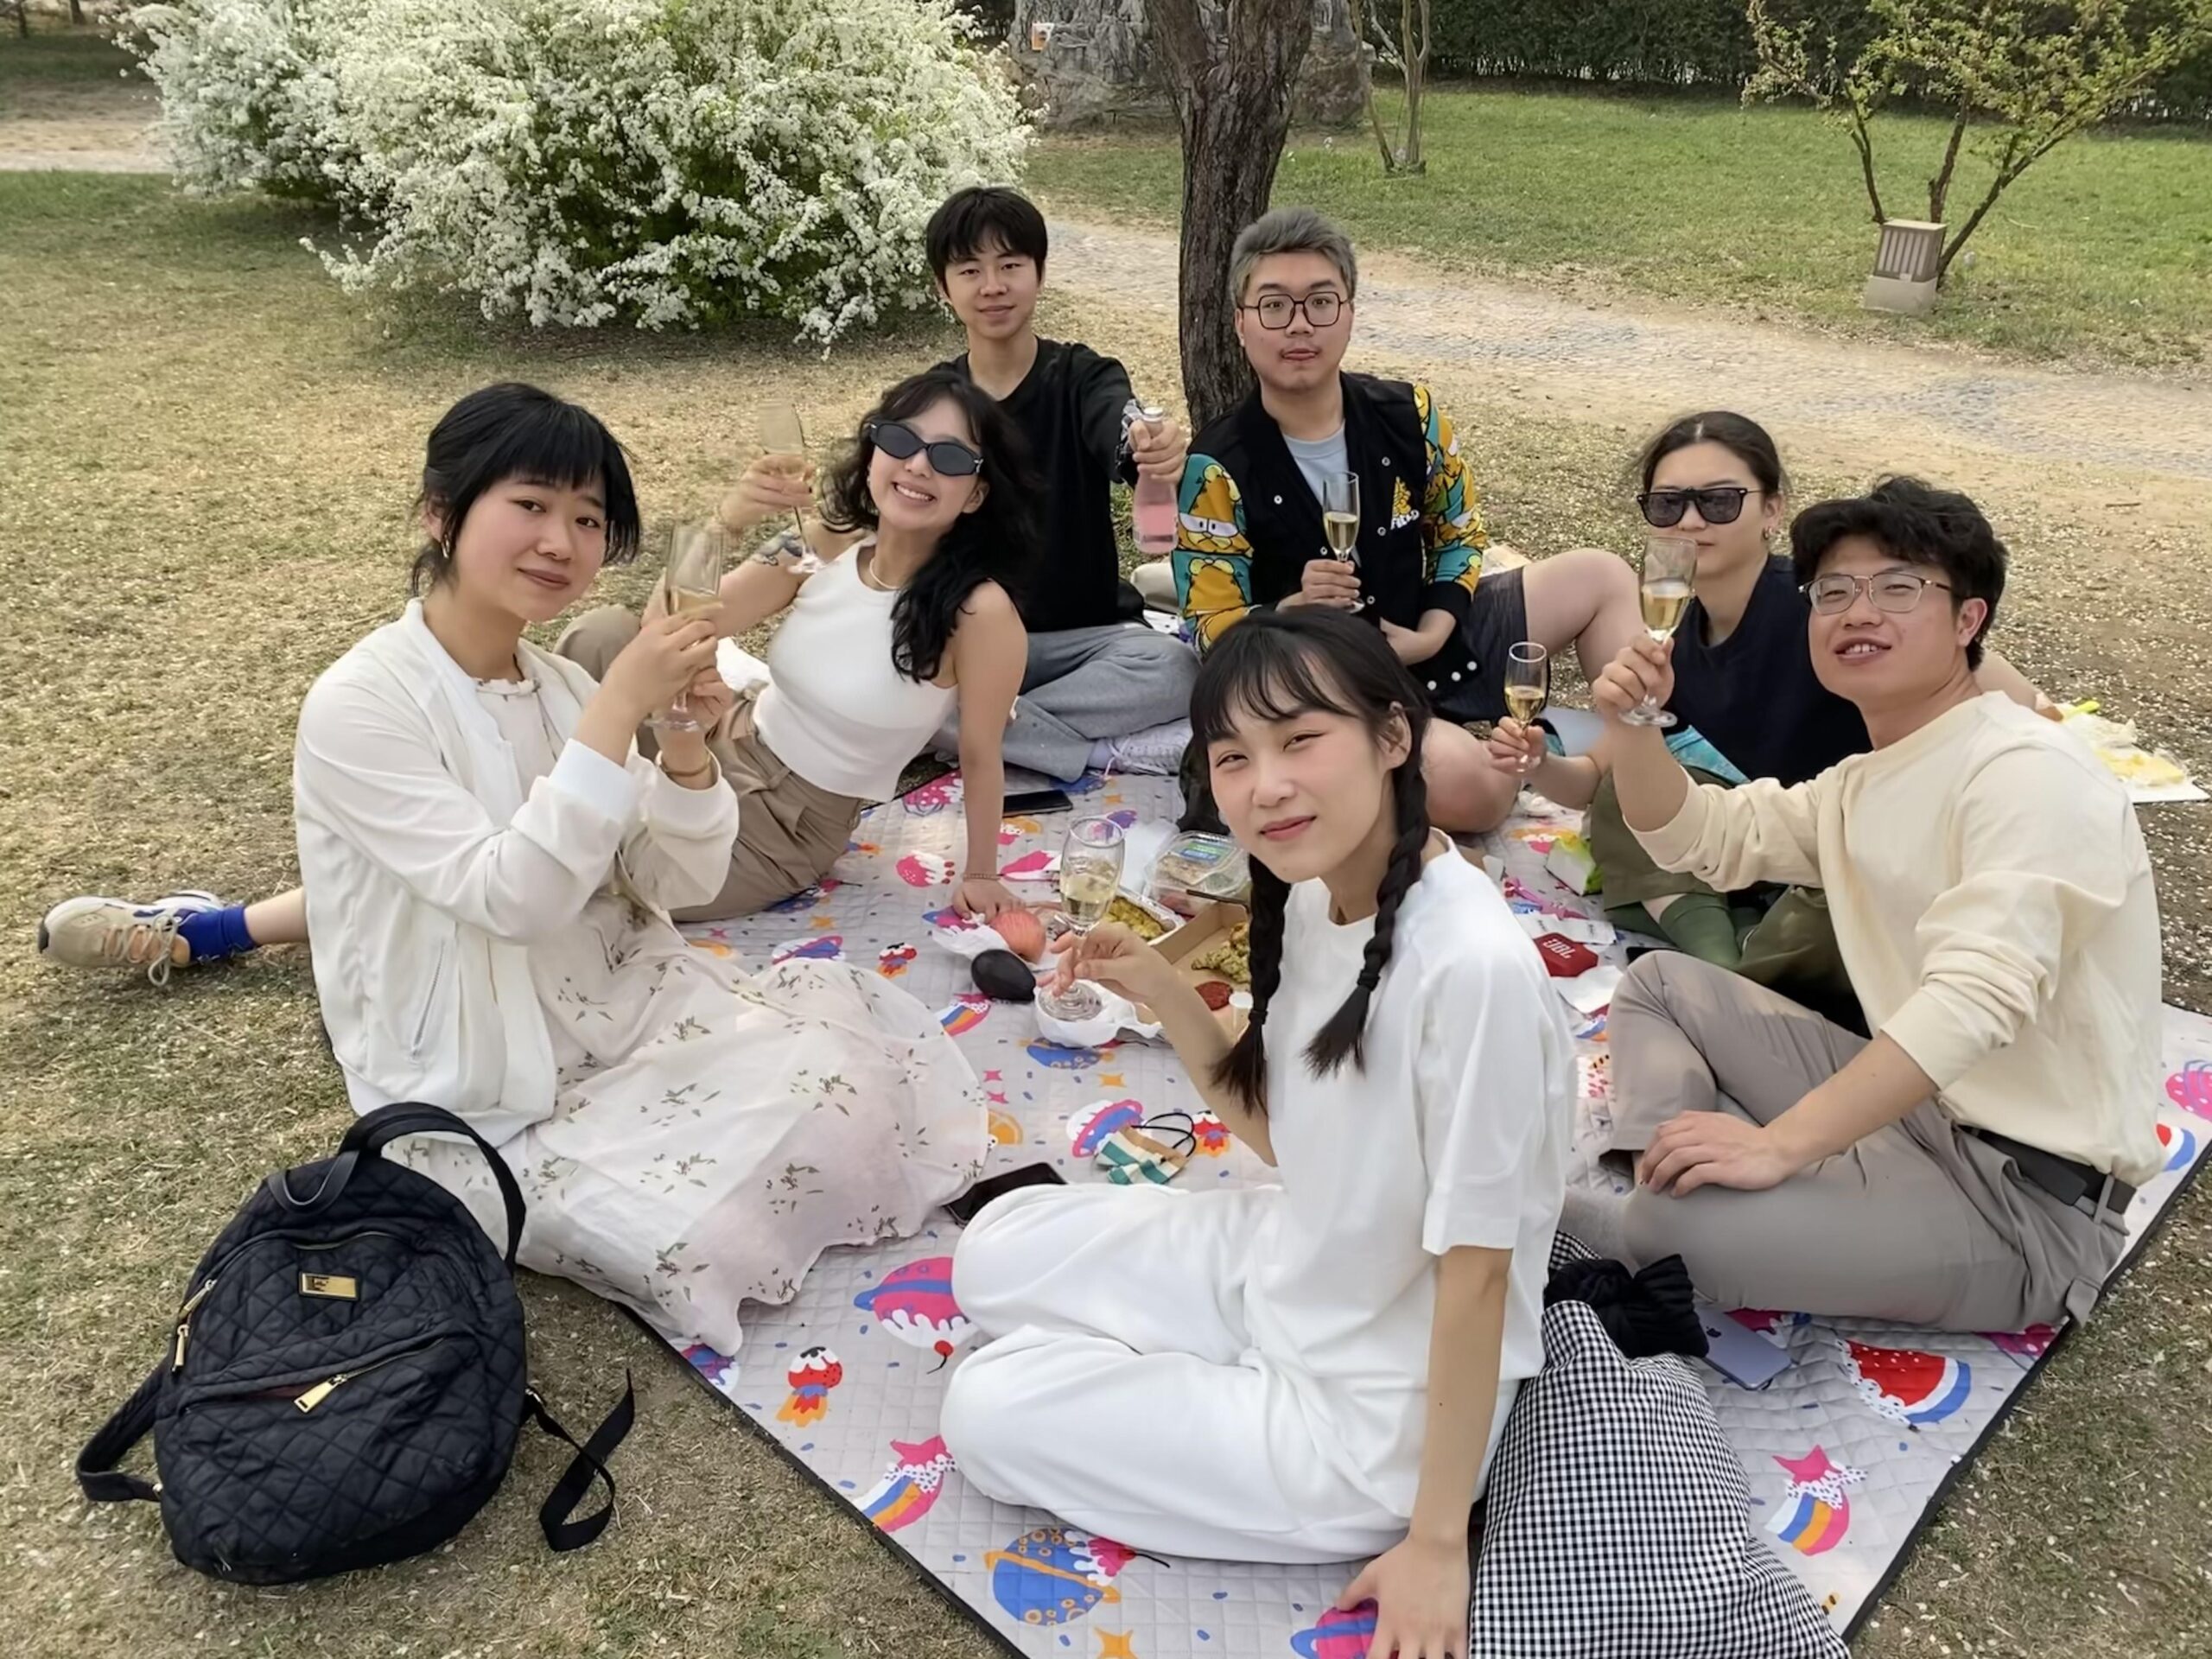 就讀中大-北大中國語言文學雙學位的學生與同學野餐合影